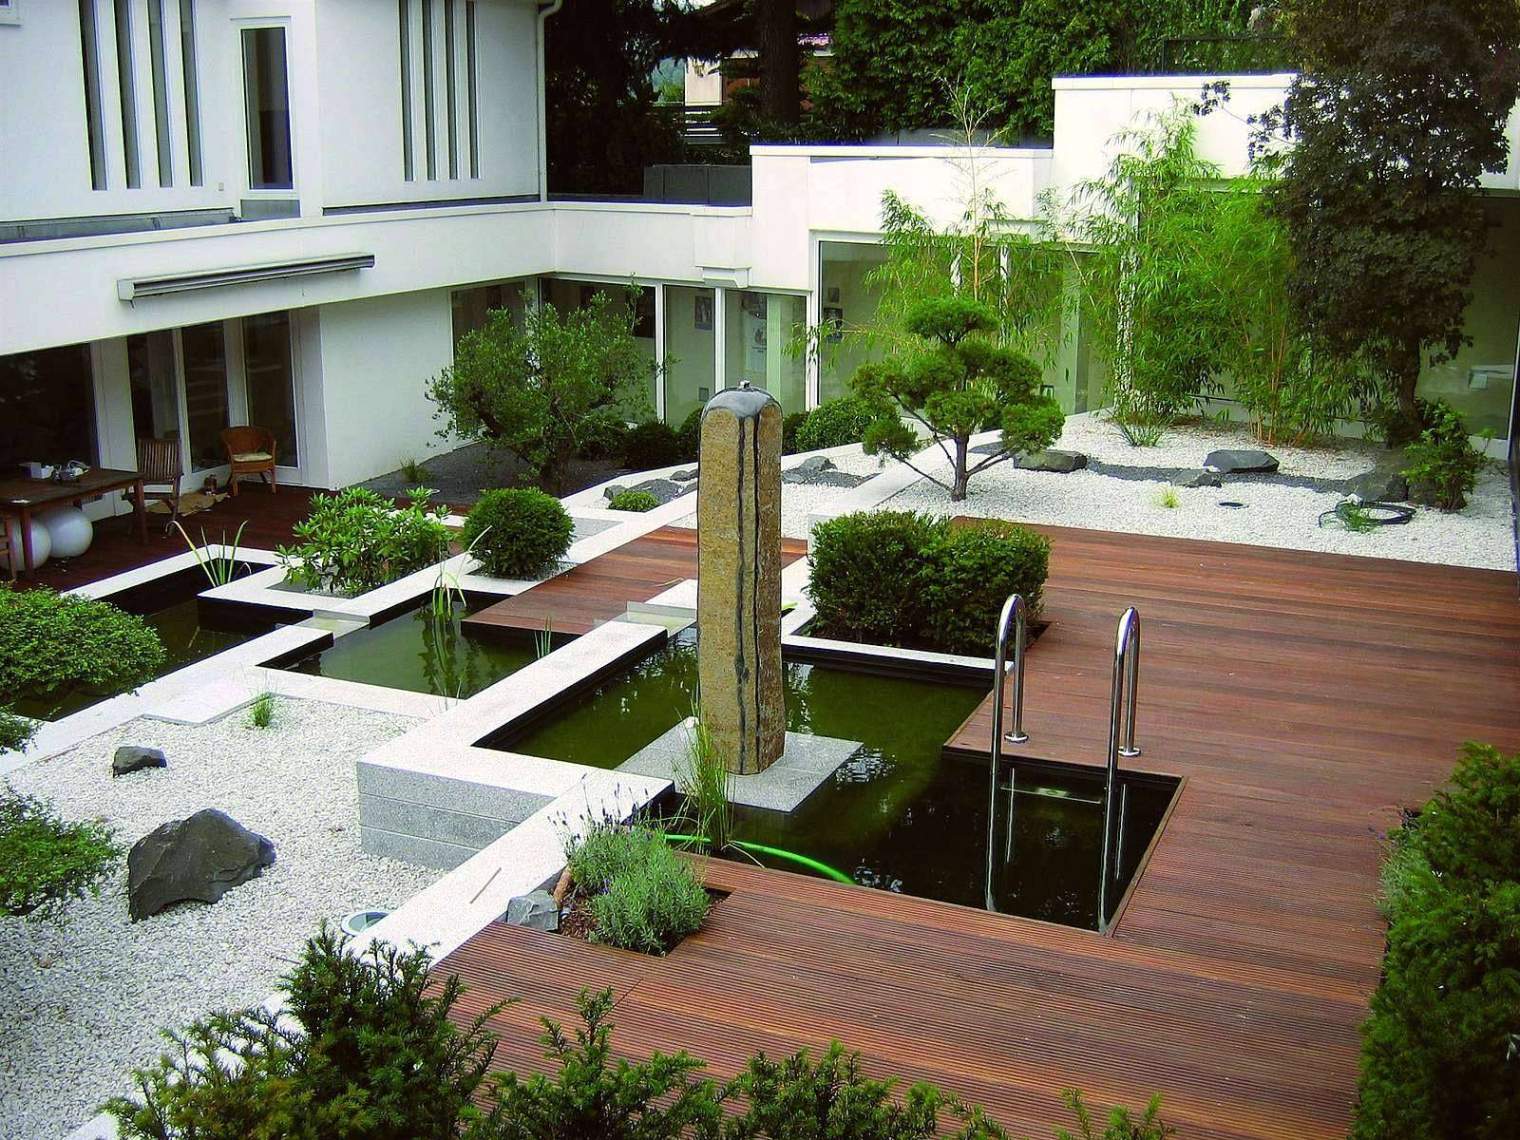 Schöne Gärten Gestalten Neu 40 Elegant Japanische Gärten Selbst Gestalten Das Beste Von